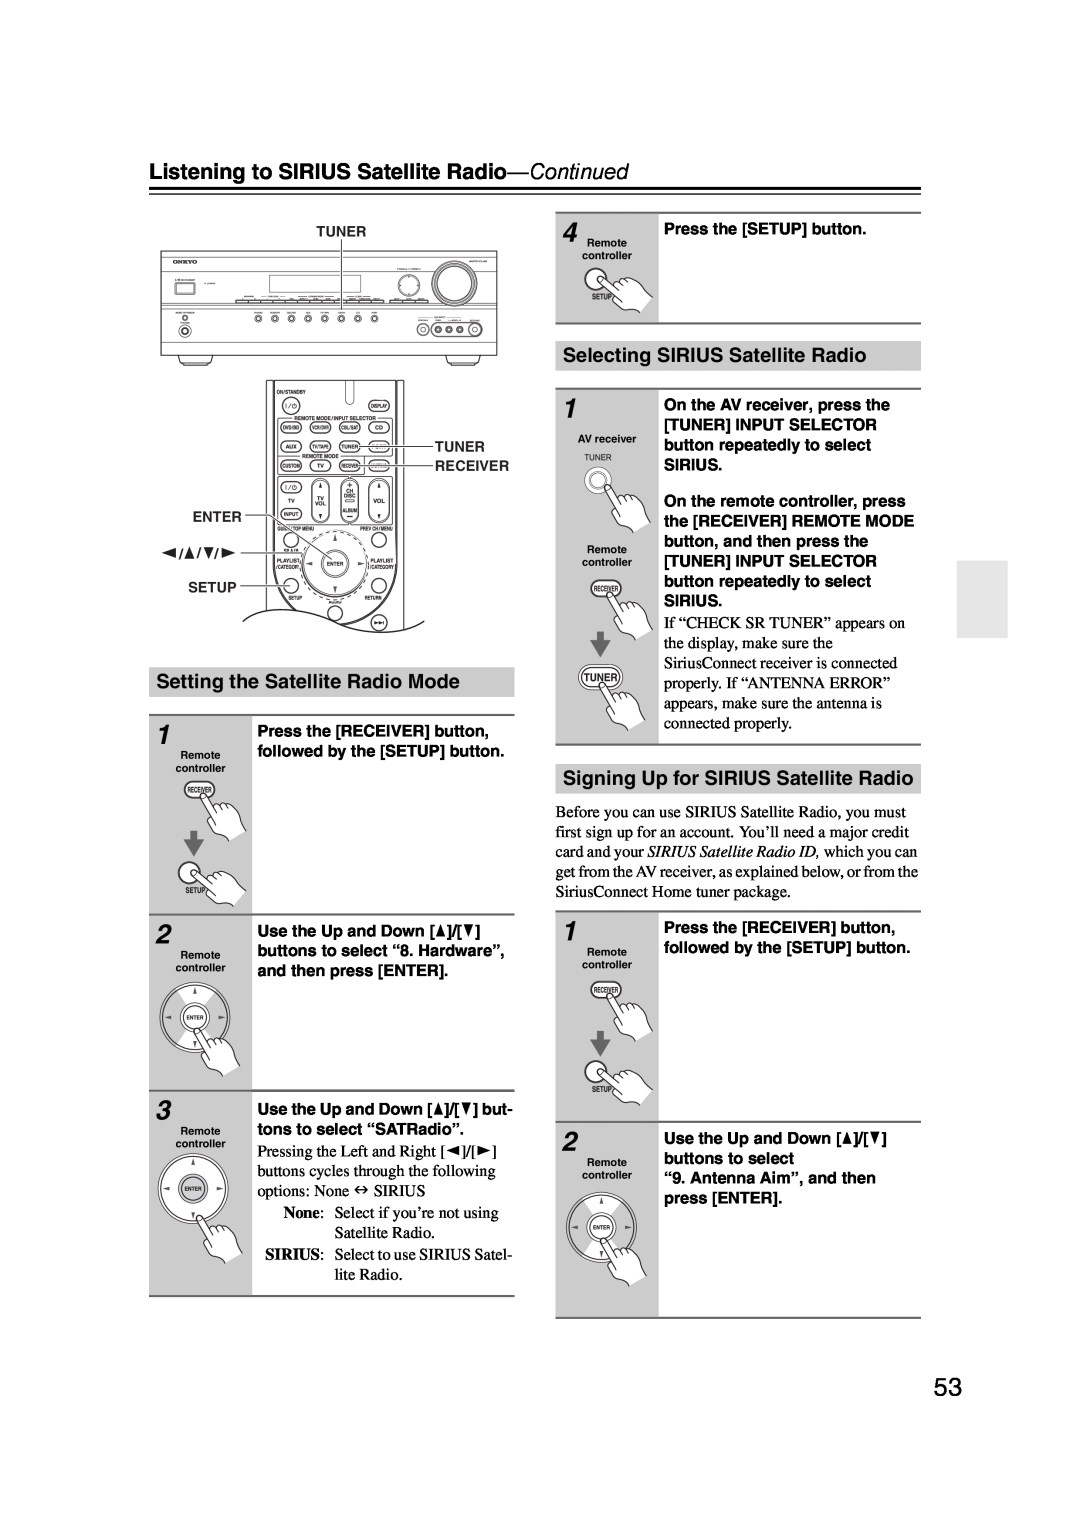 Onkyo 29344934 instruction manual Listening to SIRIUS Satellite Radio—Continued, Selecting SIRIUS Satellite Radio 